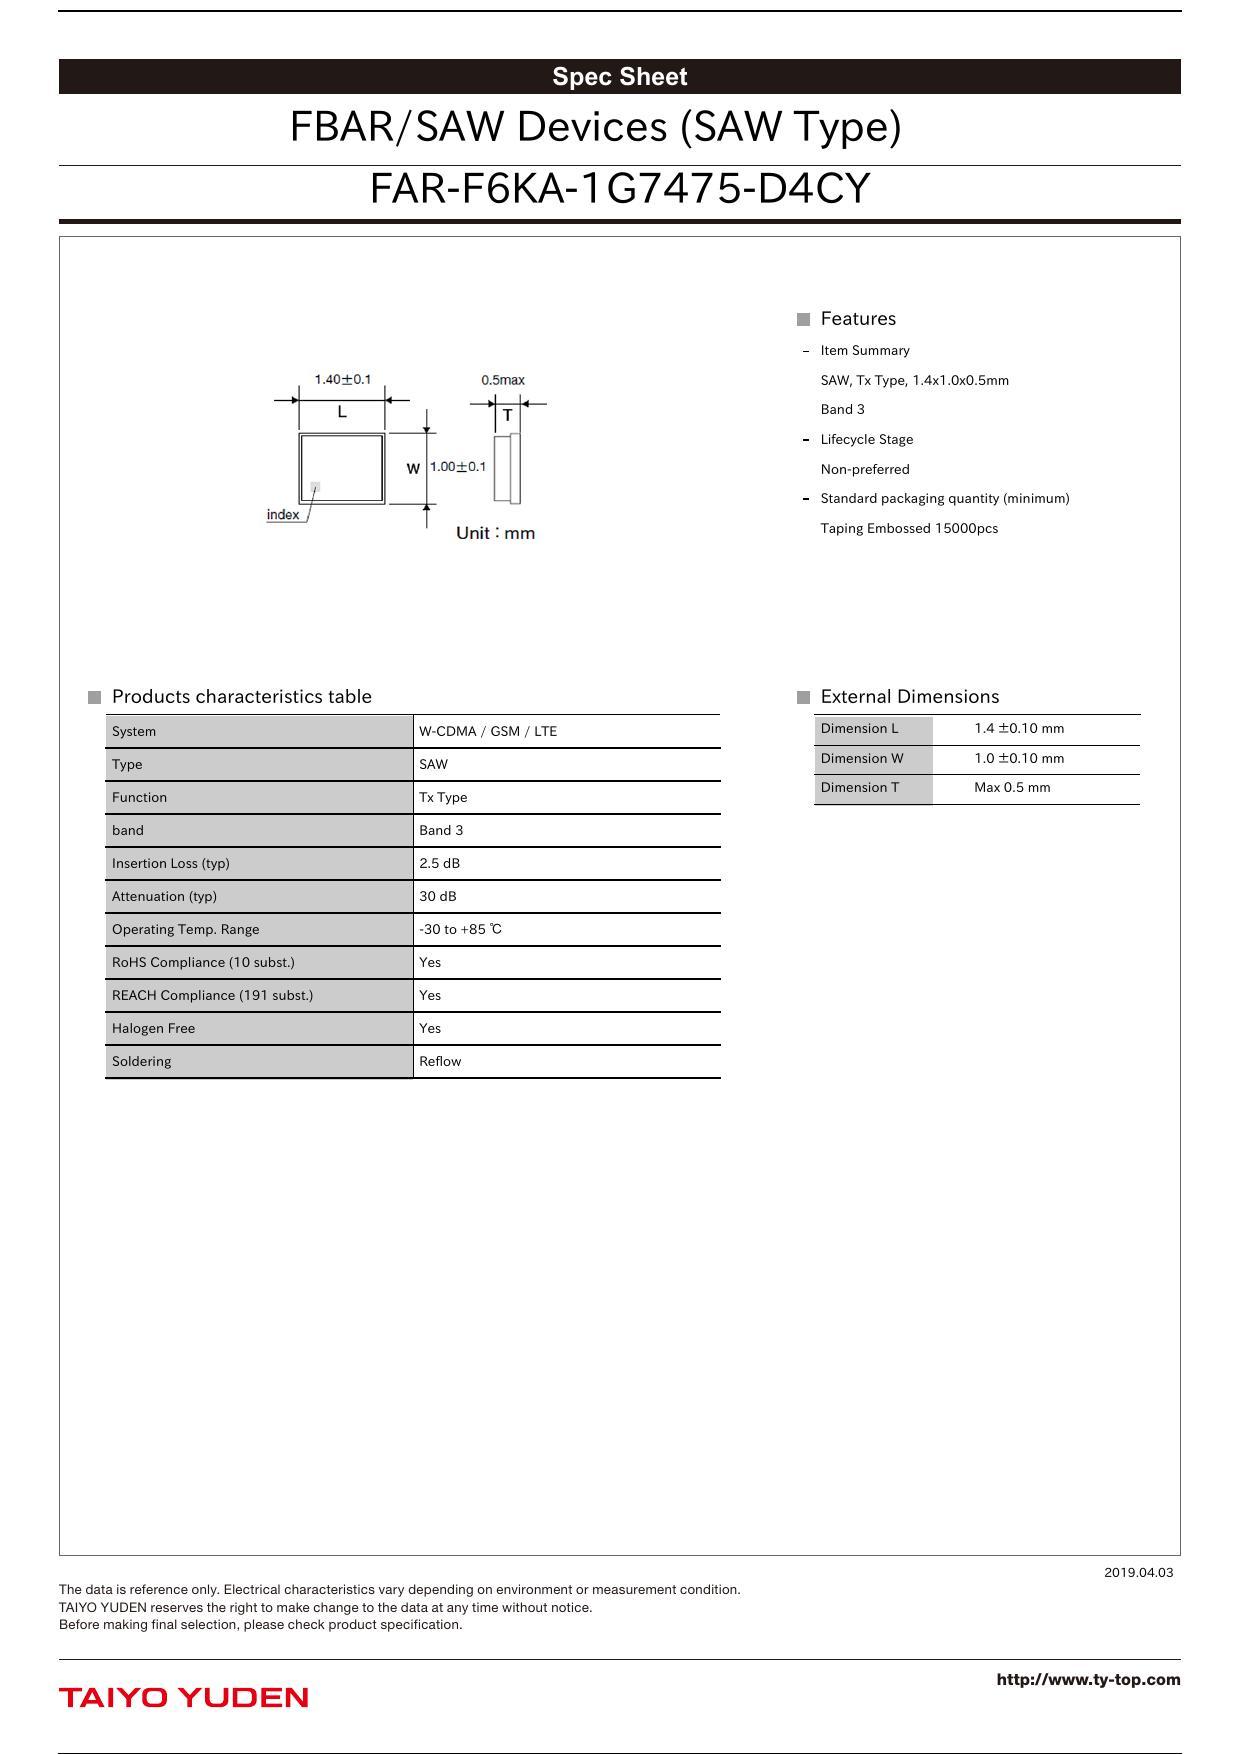 far-f6ka-167475-d4cy-fbarsaw-devices-saw-type.pdf